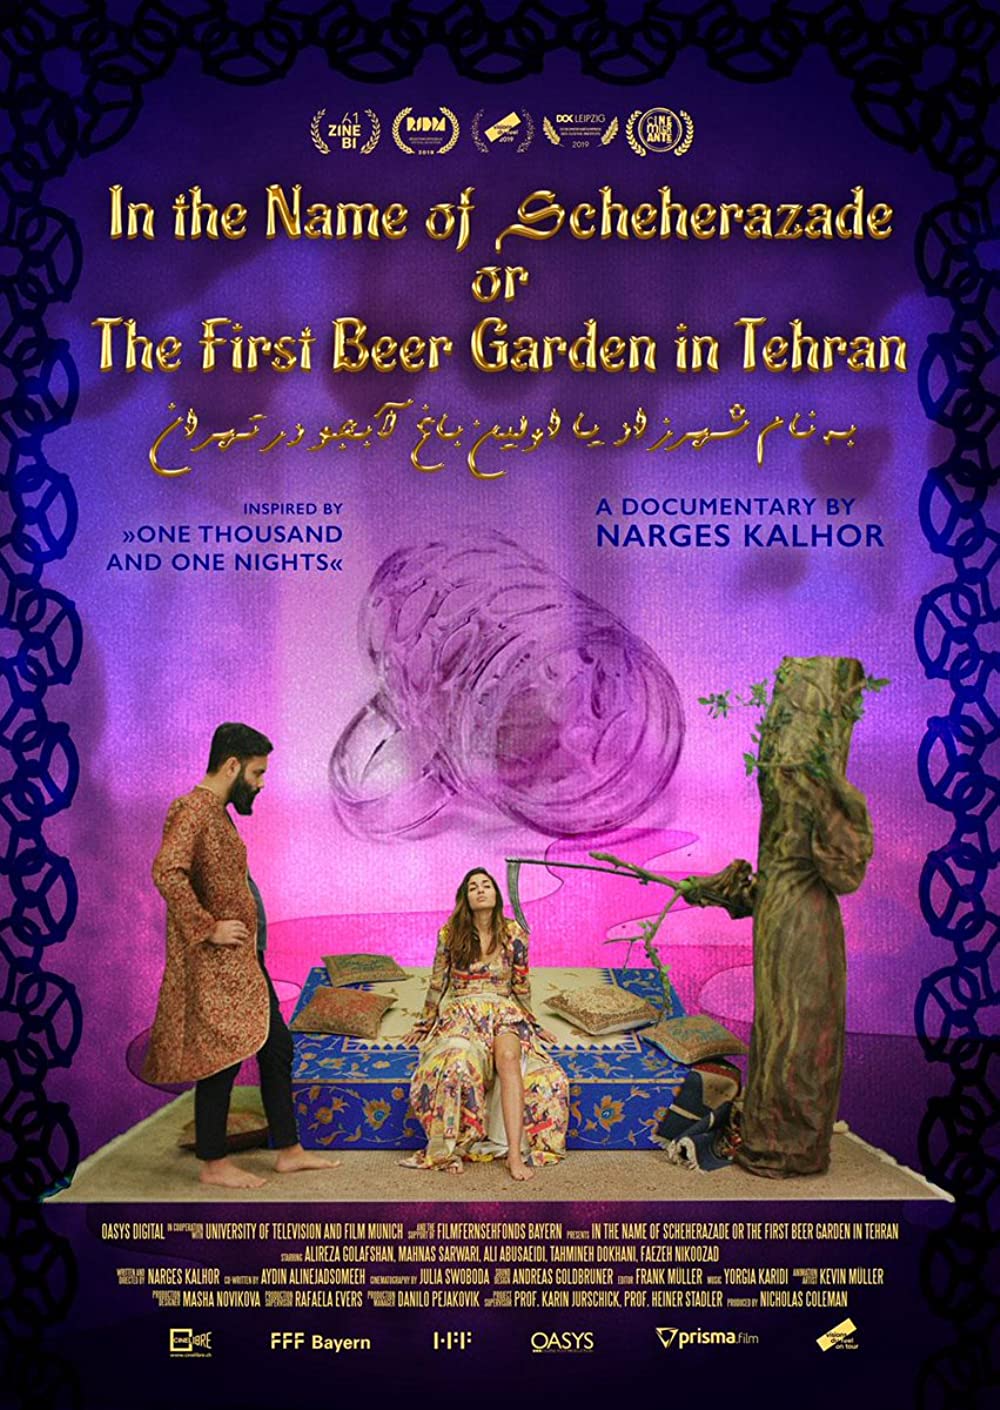 Filmbeschreibung zu In the Name of Scheherazade or The First Beer Garden in Tehran